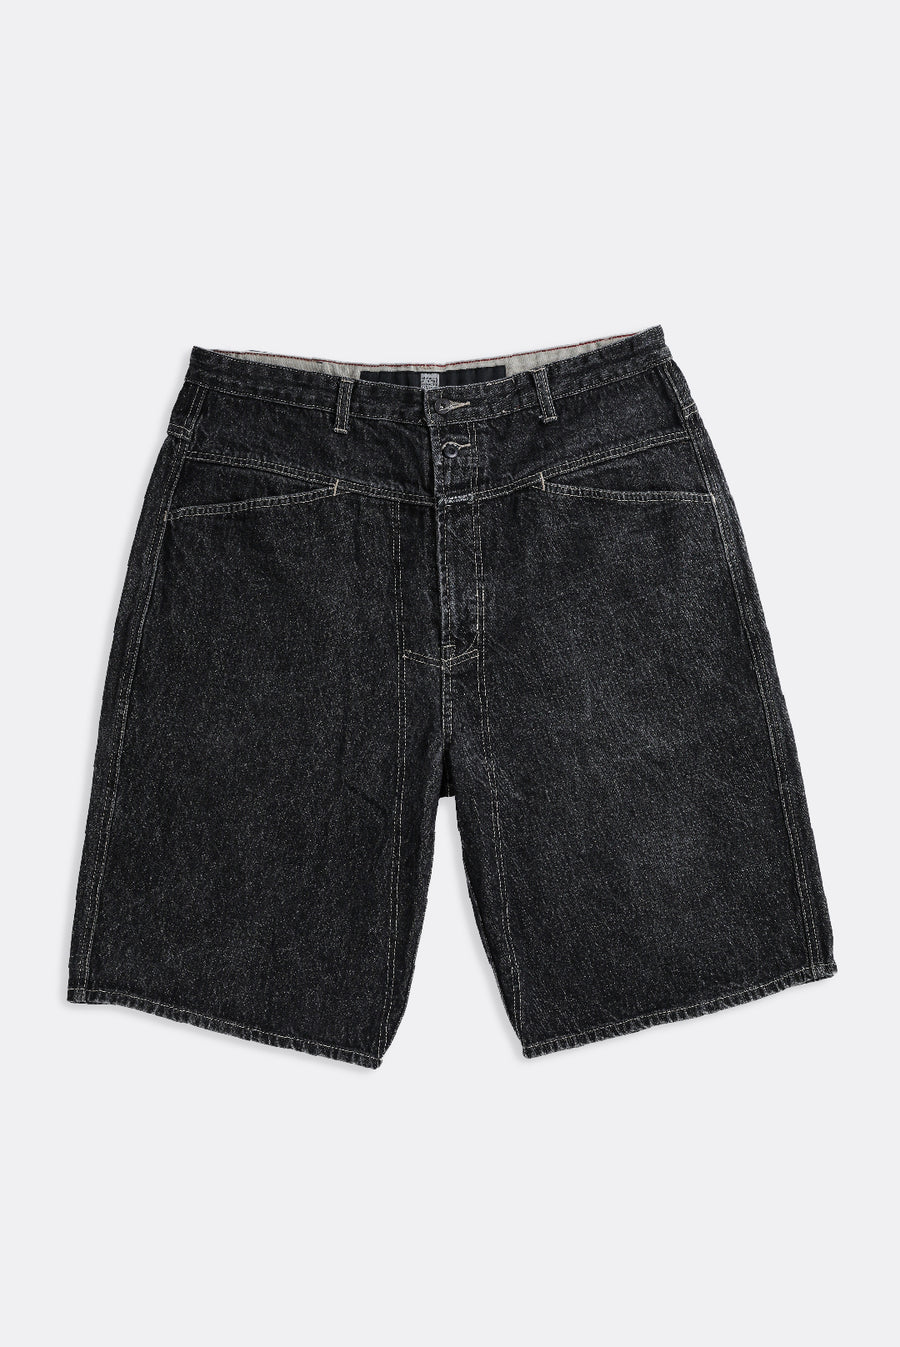 Vintage Girbaud Denim Shorts - W36, W38